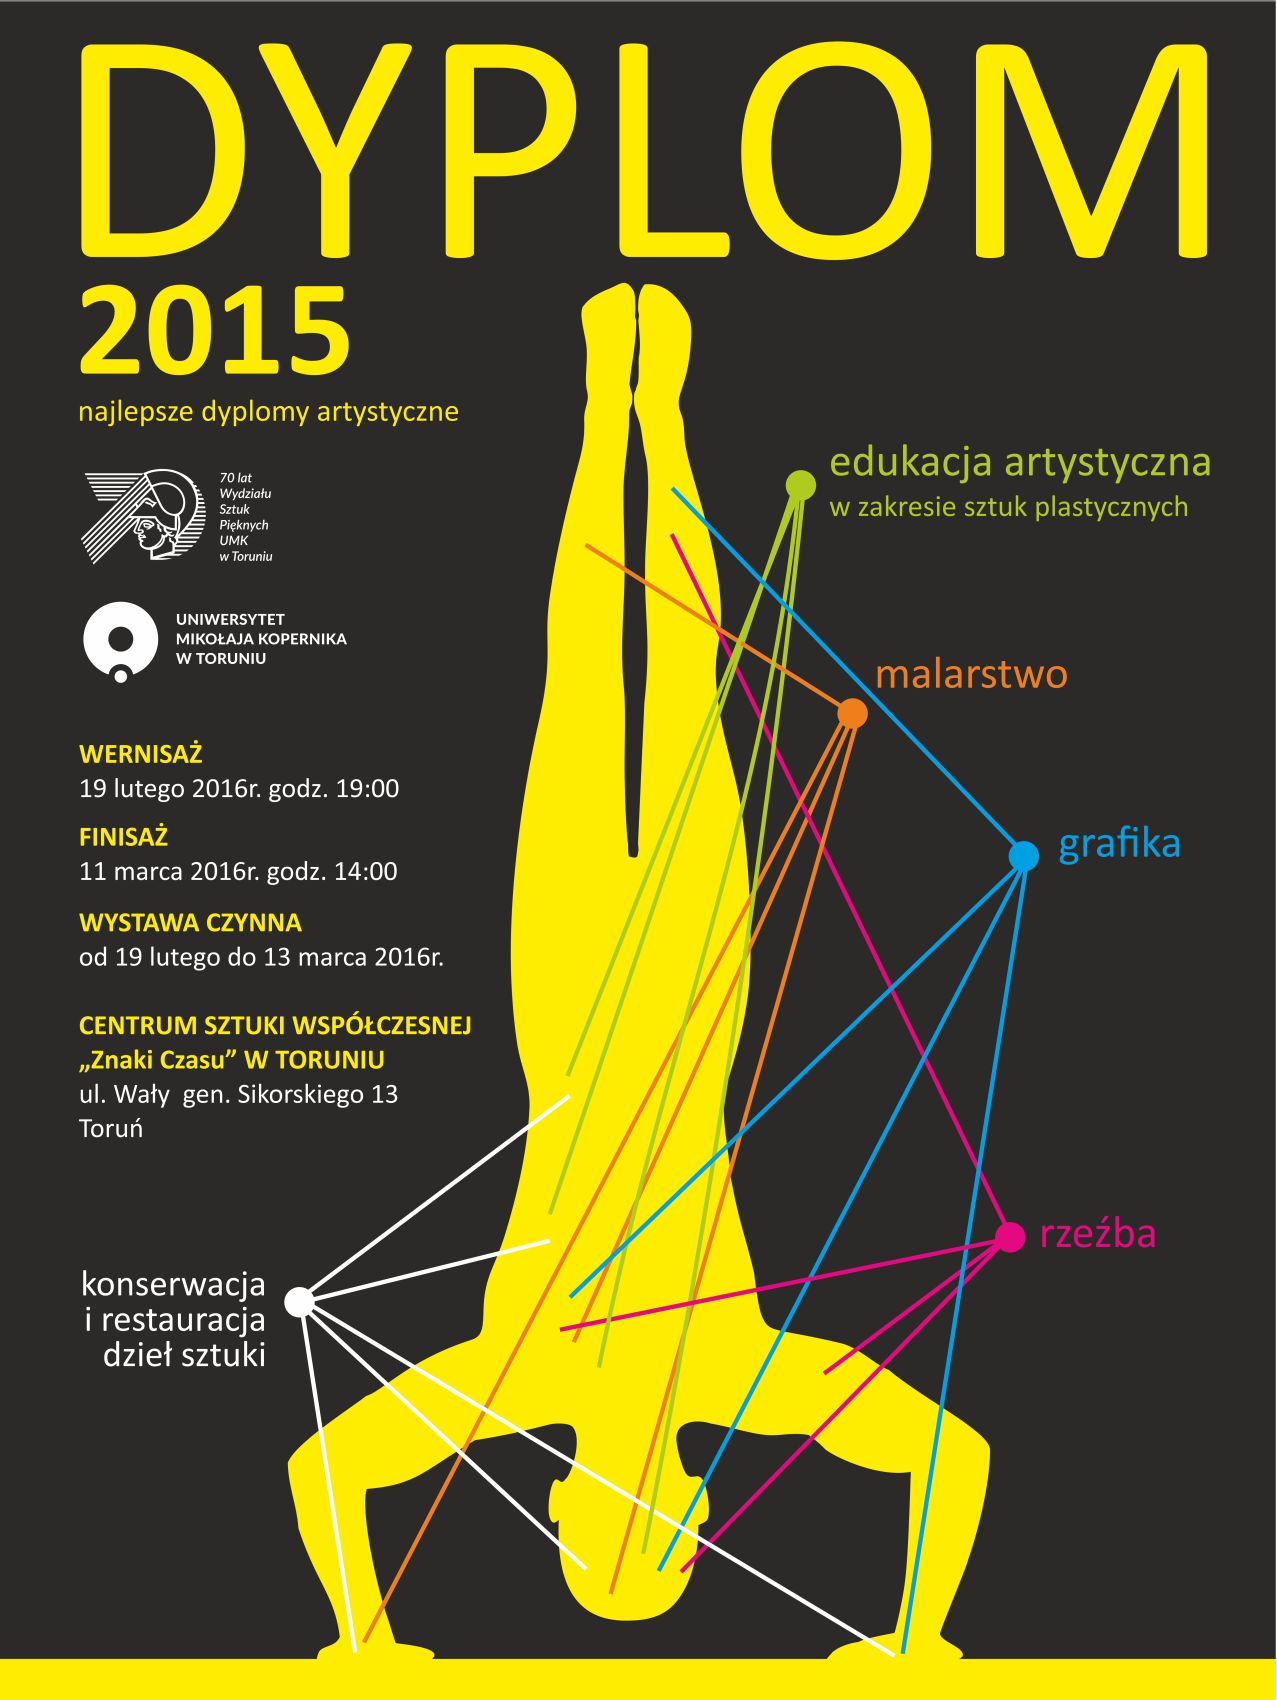 Wystawa „Dyplom 2015”, Centrum Sztuki Współczesnej „Znaki Czasu”, Toruń – plakat (źródło:materiały prasowe organizatora)